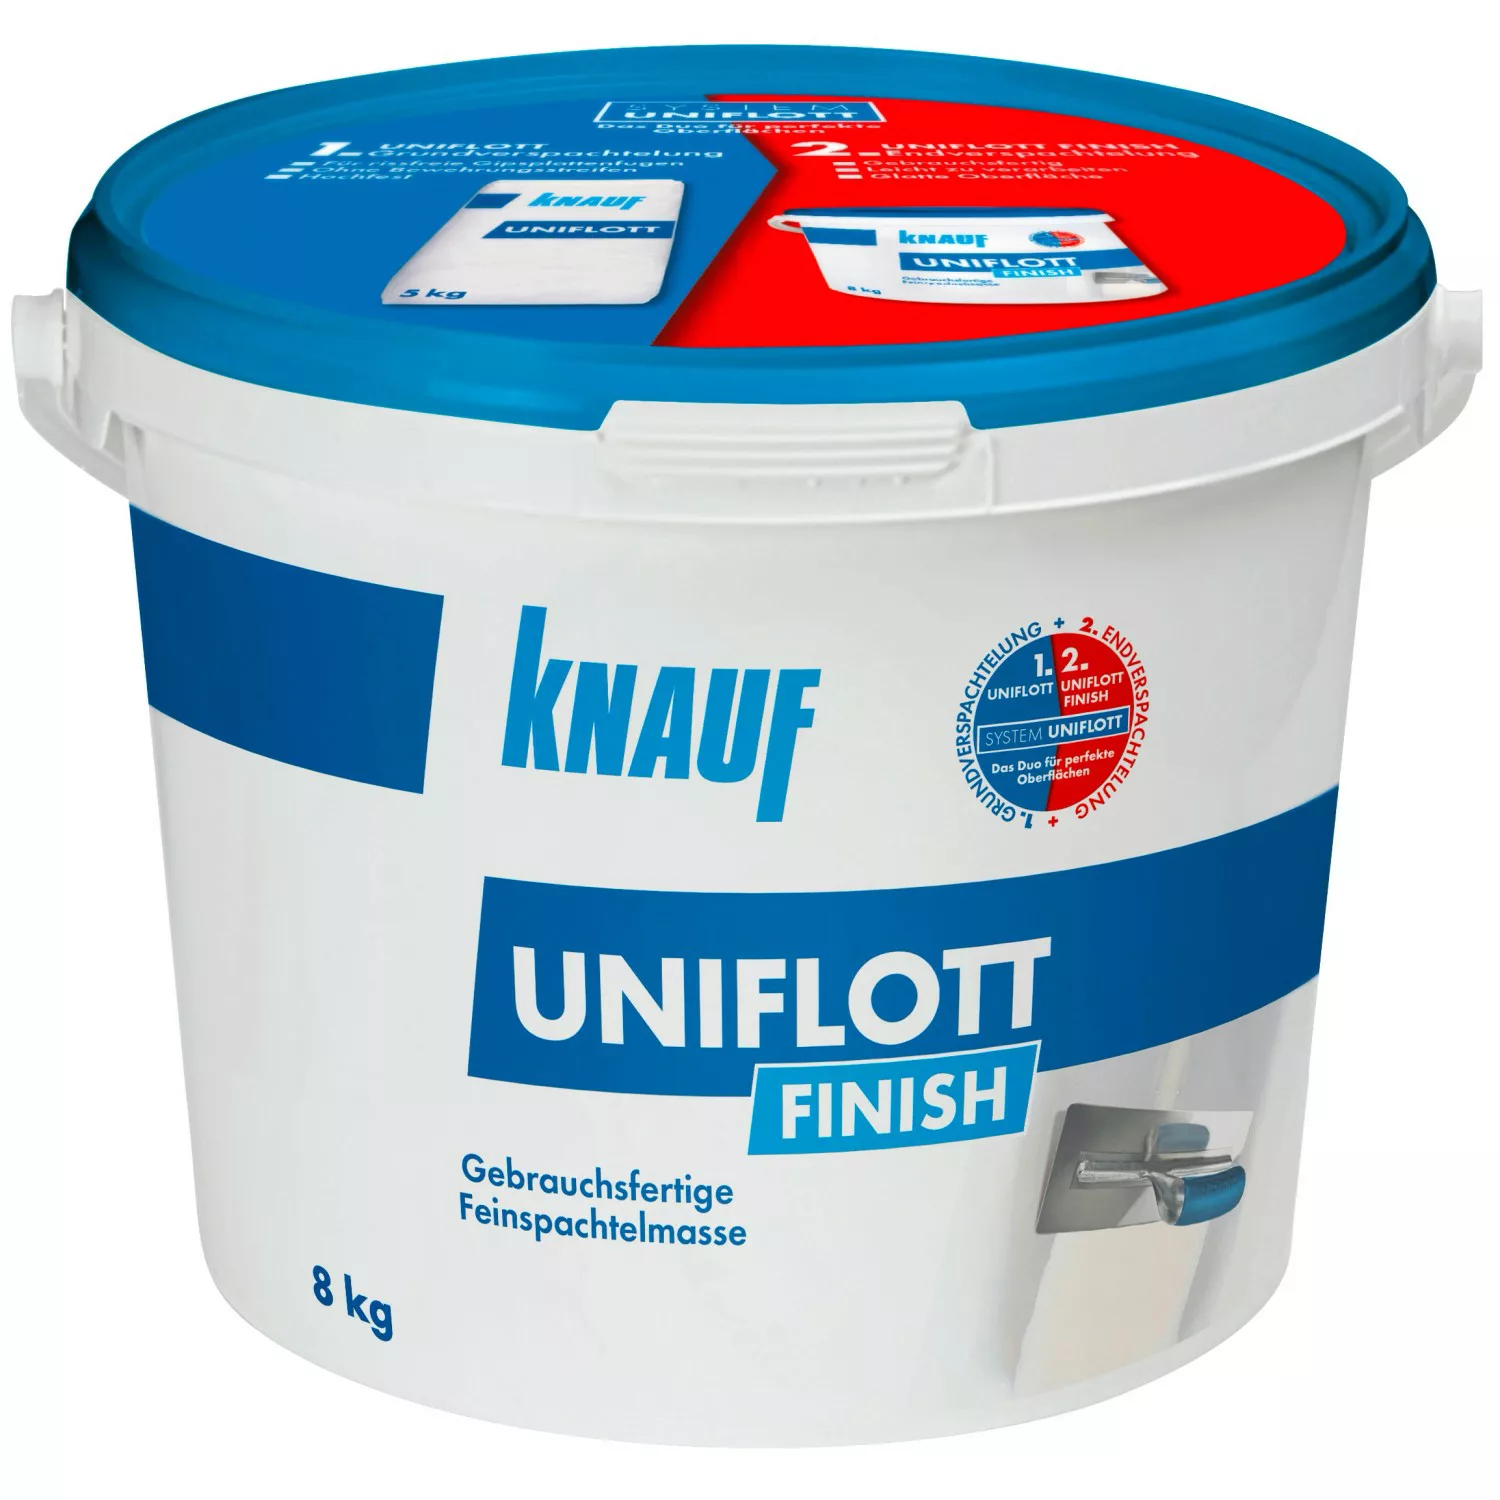 Knauf Feinspachtelmasse Uniflott Finish 8 kg günstig online kaufen